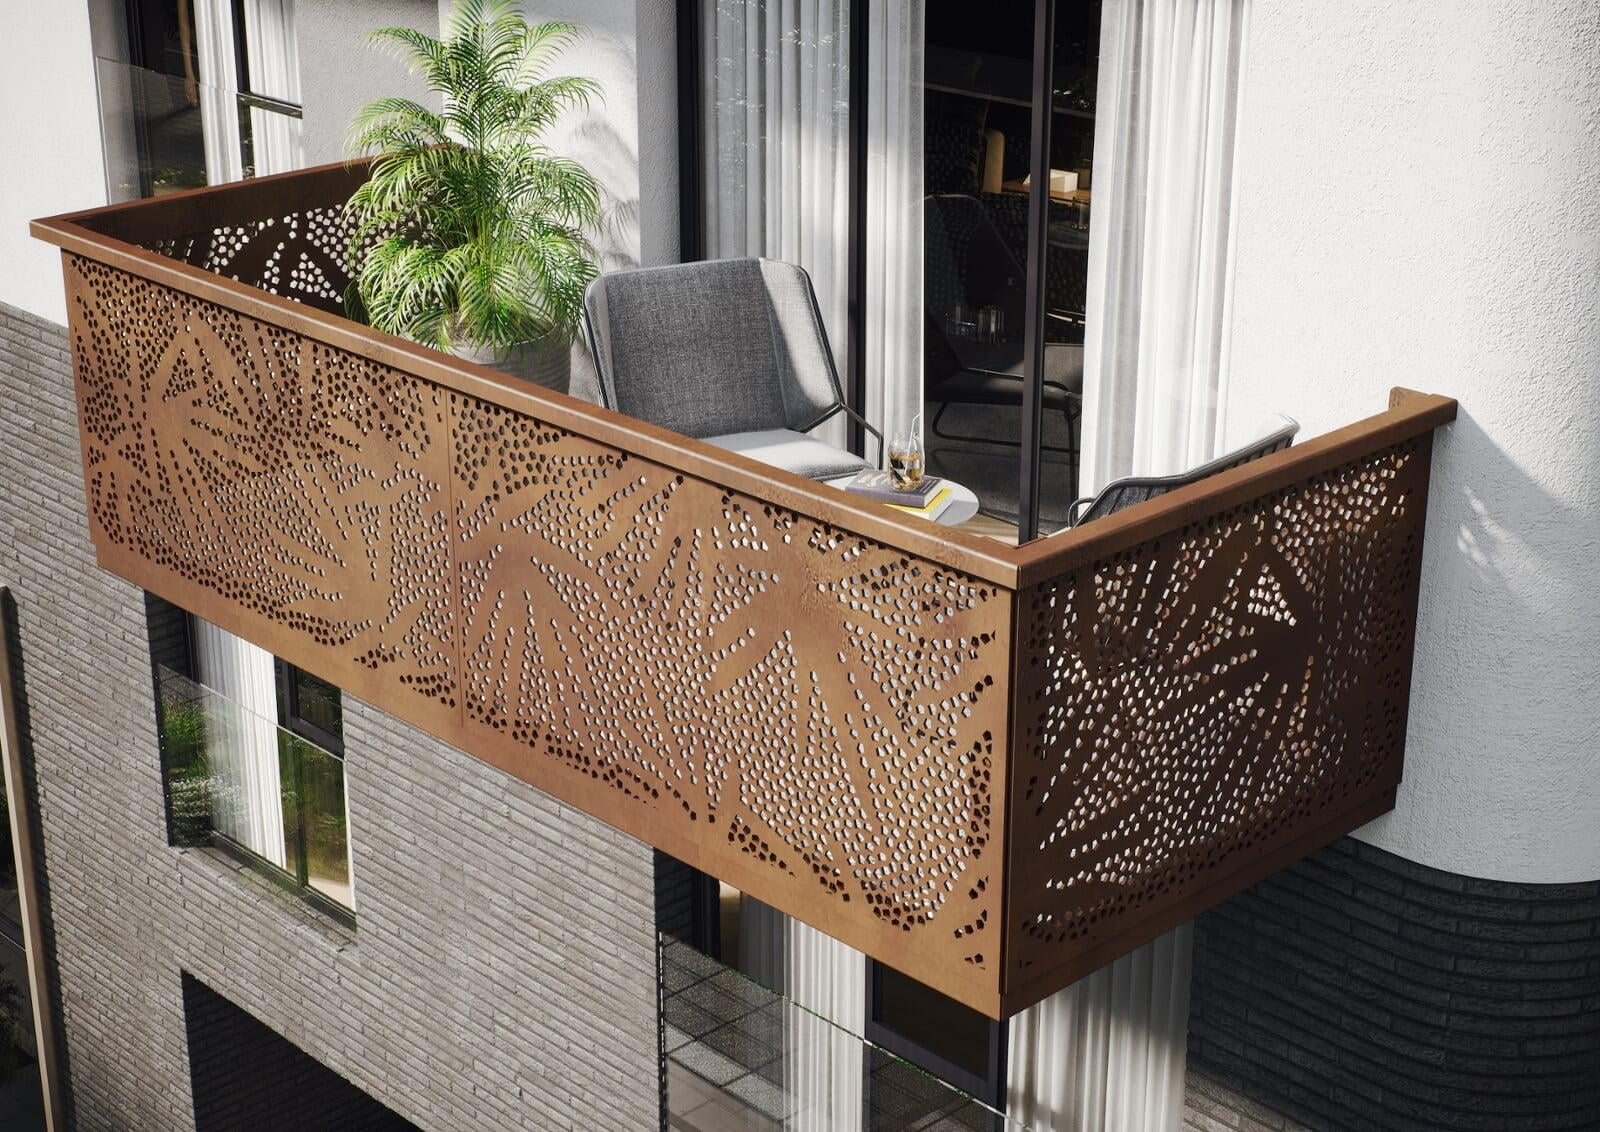 Hängebalkon mit Balkongeländer PALMO CORTEN. Eine besondere Optik für die ausdrucksstarke Fassadengestaltung z.B. mit CORTEN-Stahl